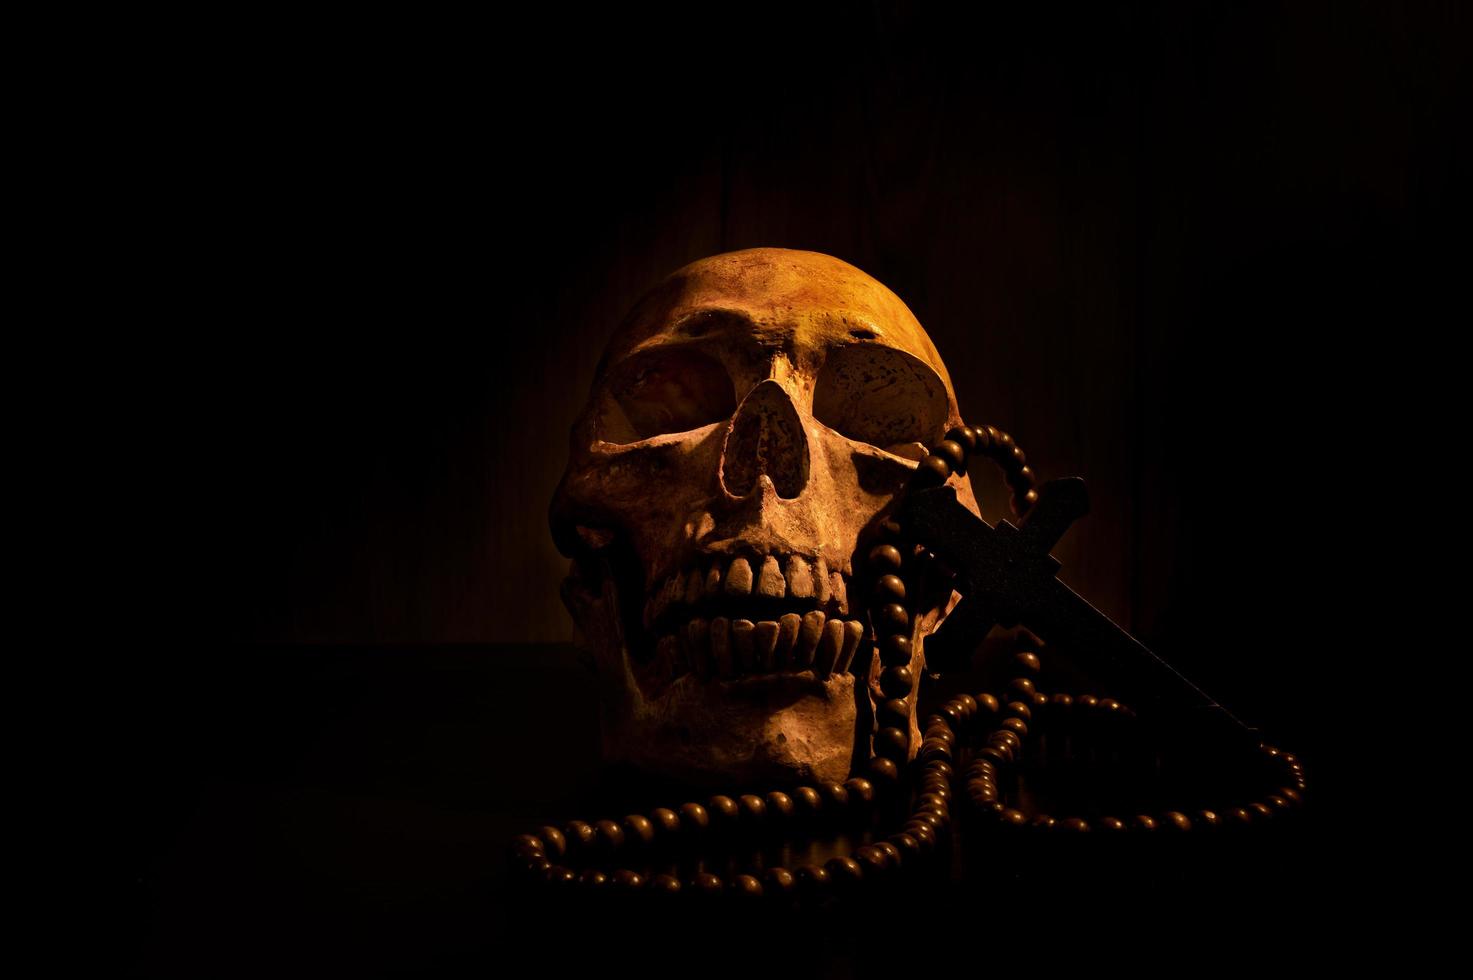 art de la nature morte d'un crâne humain et d'une perle sur fond noir photo